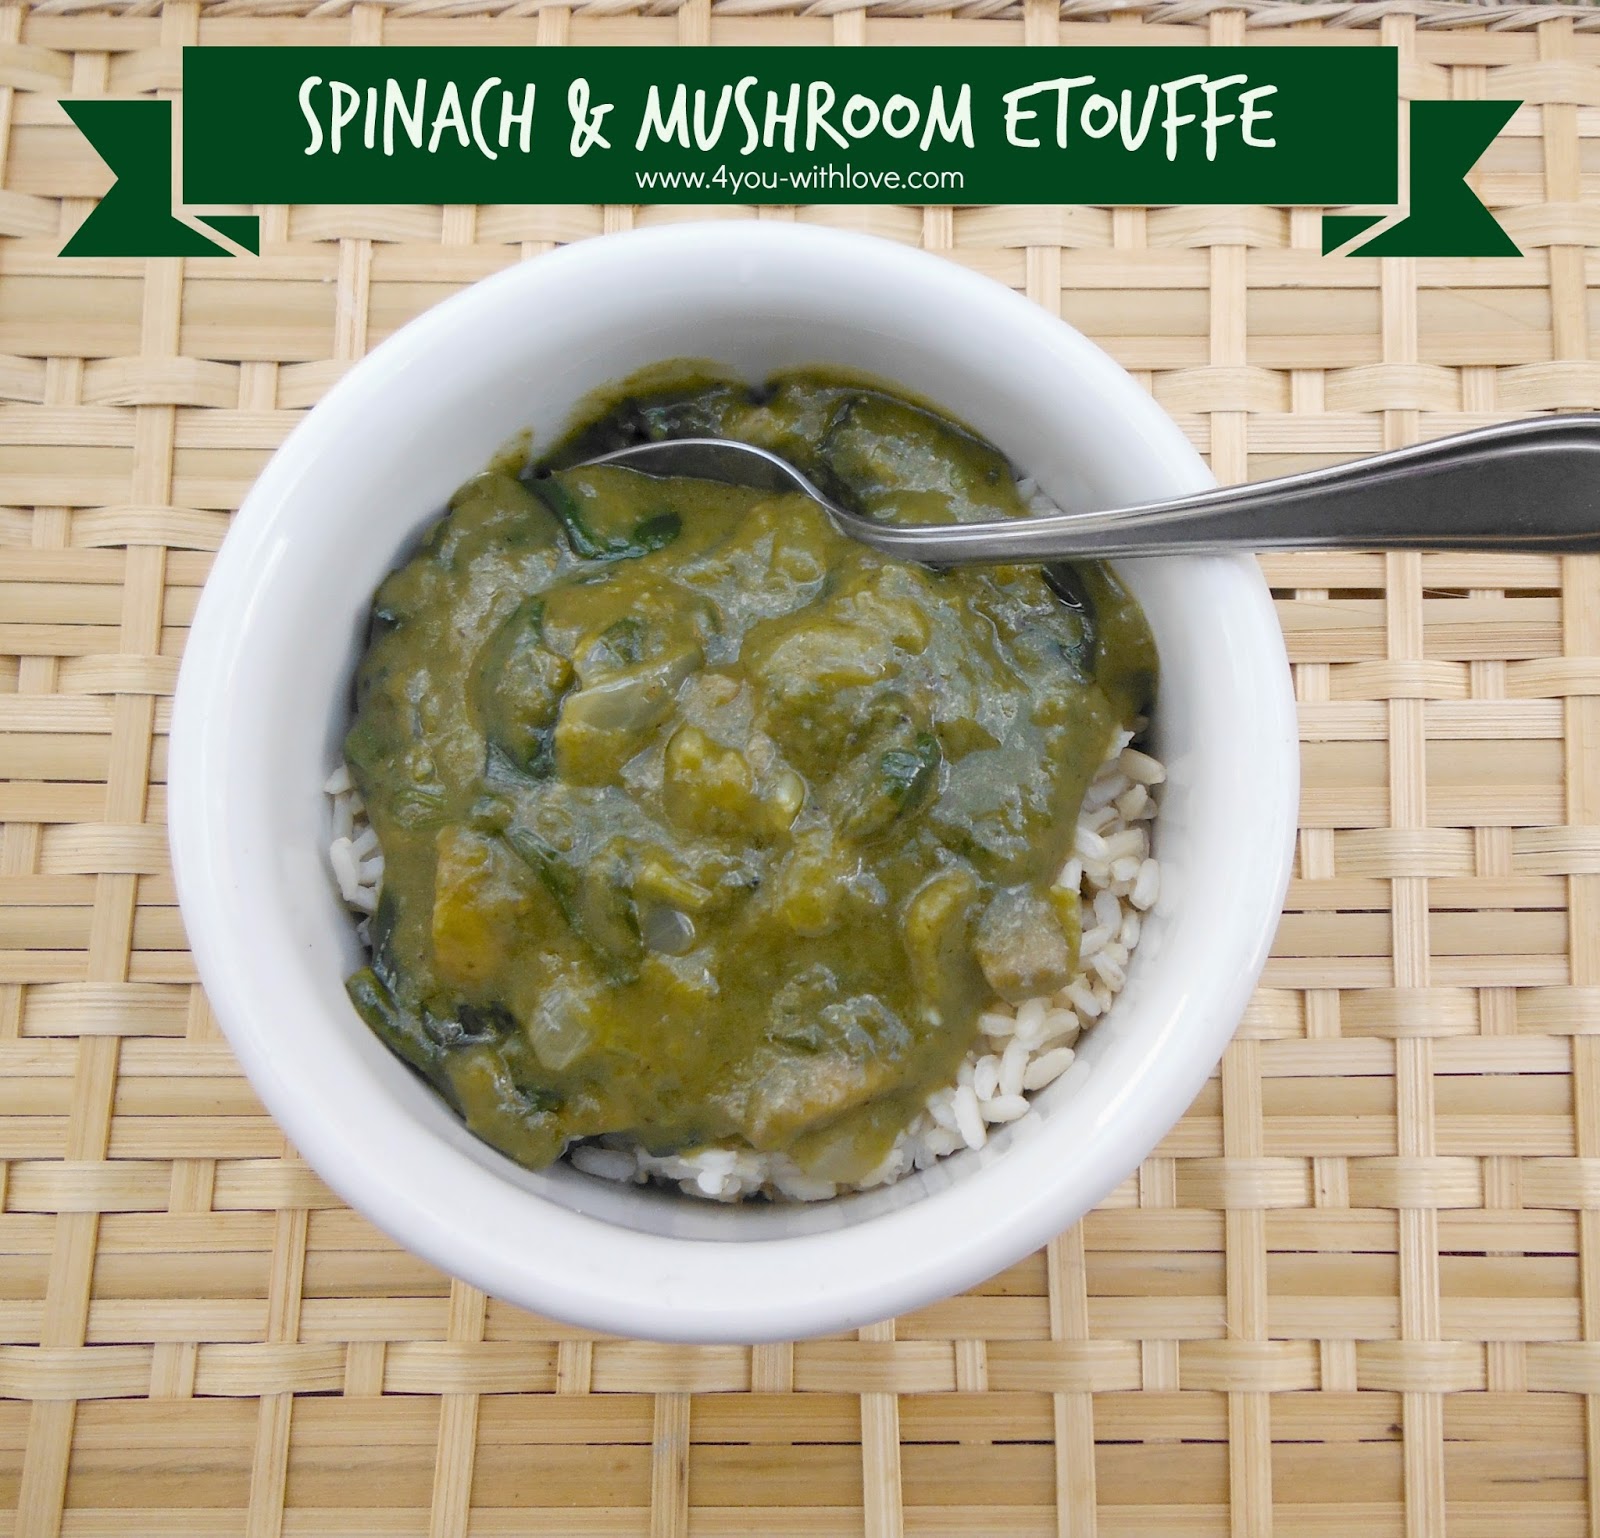 J Gumbo Inspired Spinach & Mushroom Etouffe